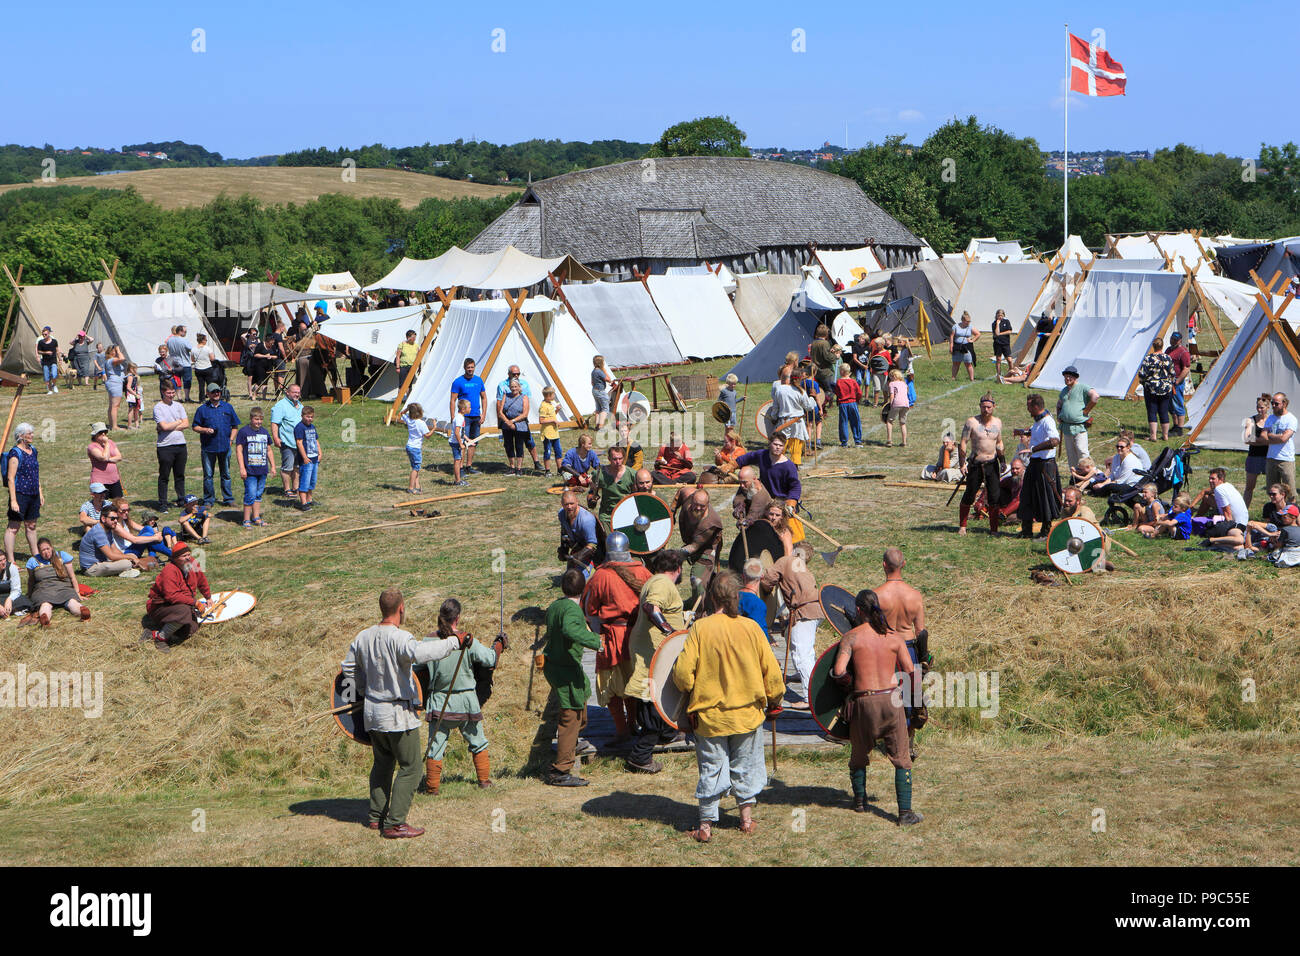 Viking Games during the Viking Festival at Fyrkat, Denmark Stock Photo